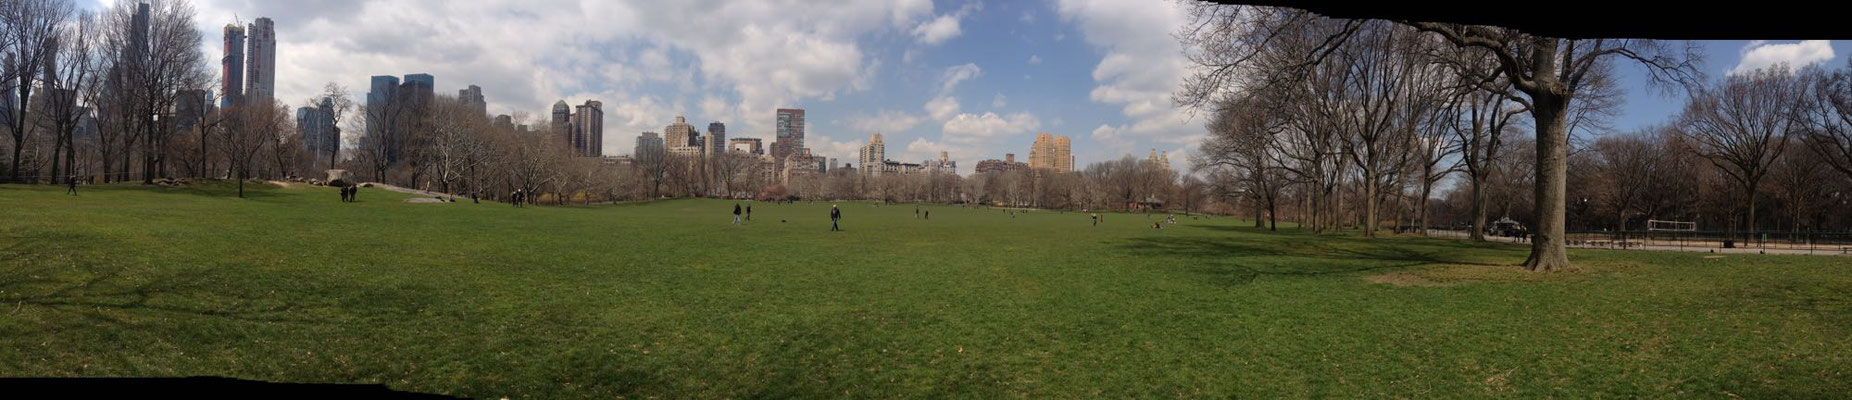 endlich im Central Park